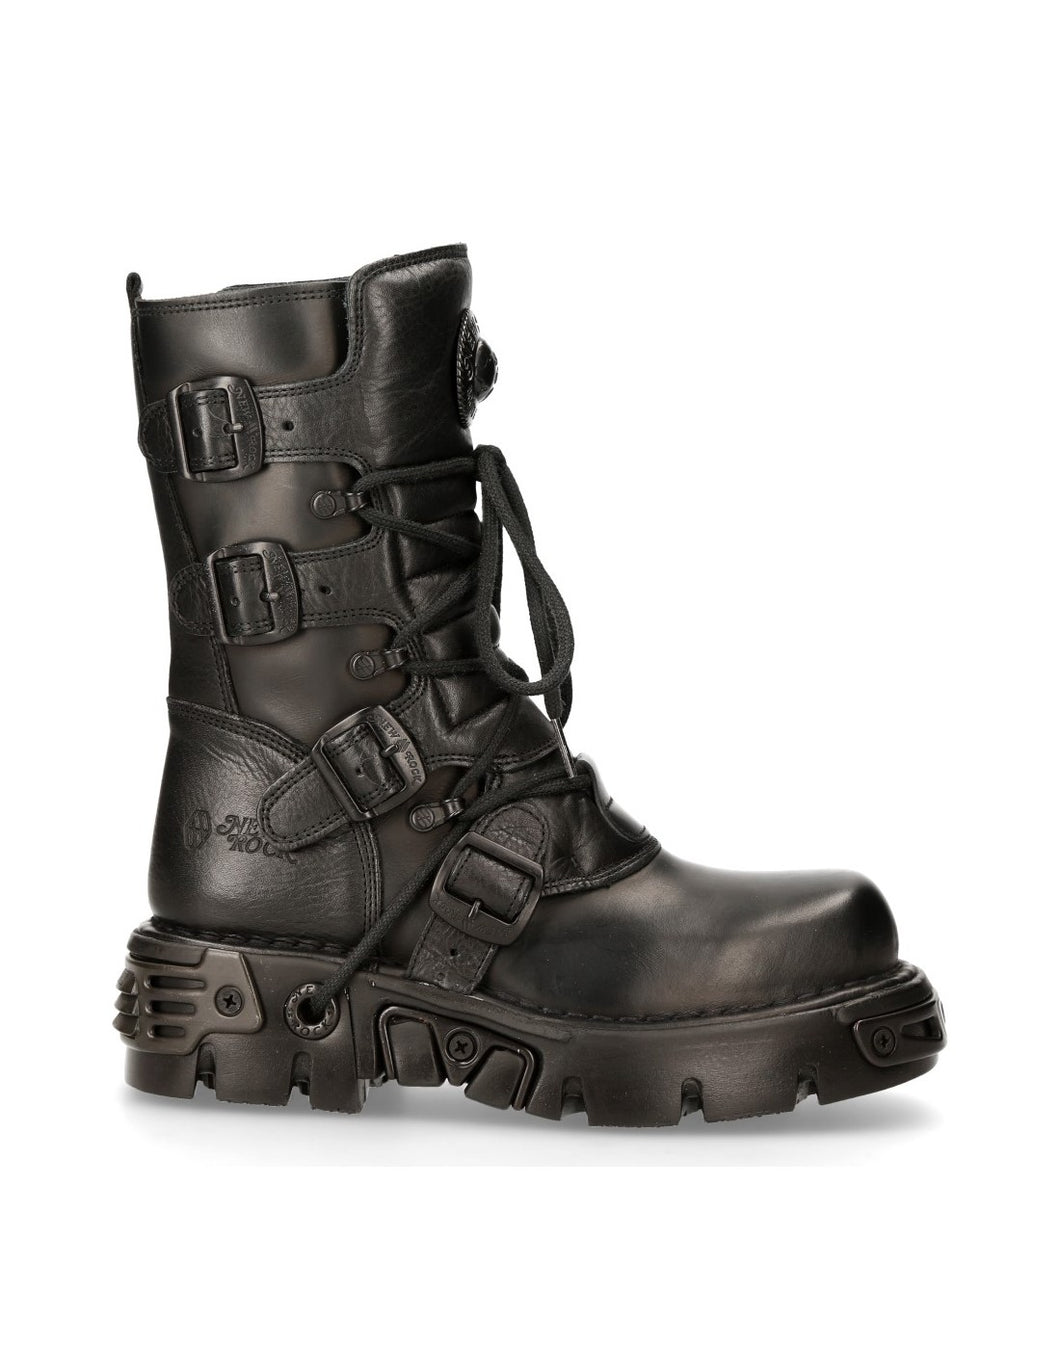 New Rock Schuhe Boots M.373-S18 Stiefel Bikerstiefel Gothic Unisex